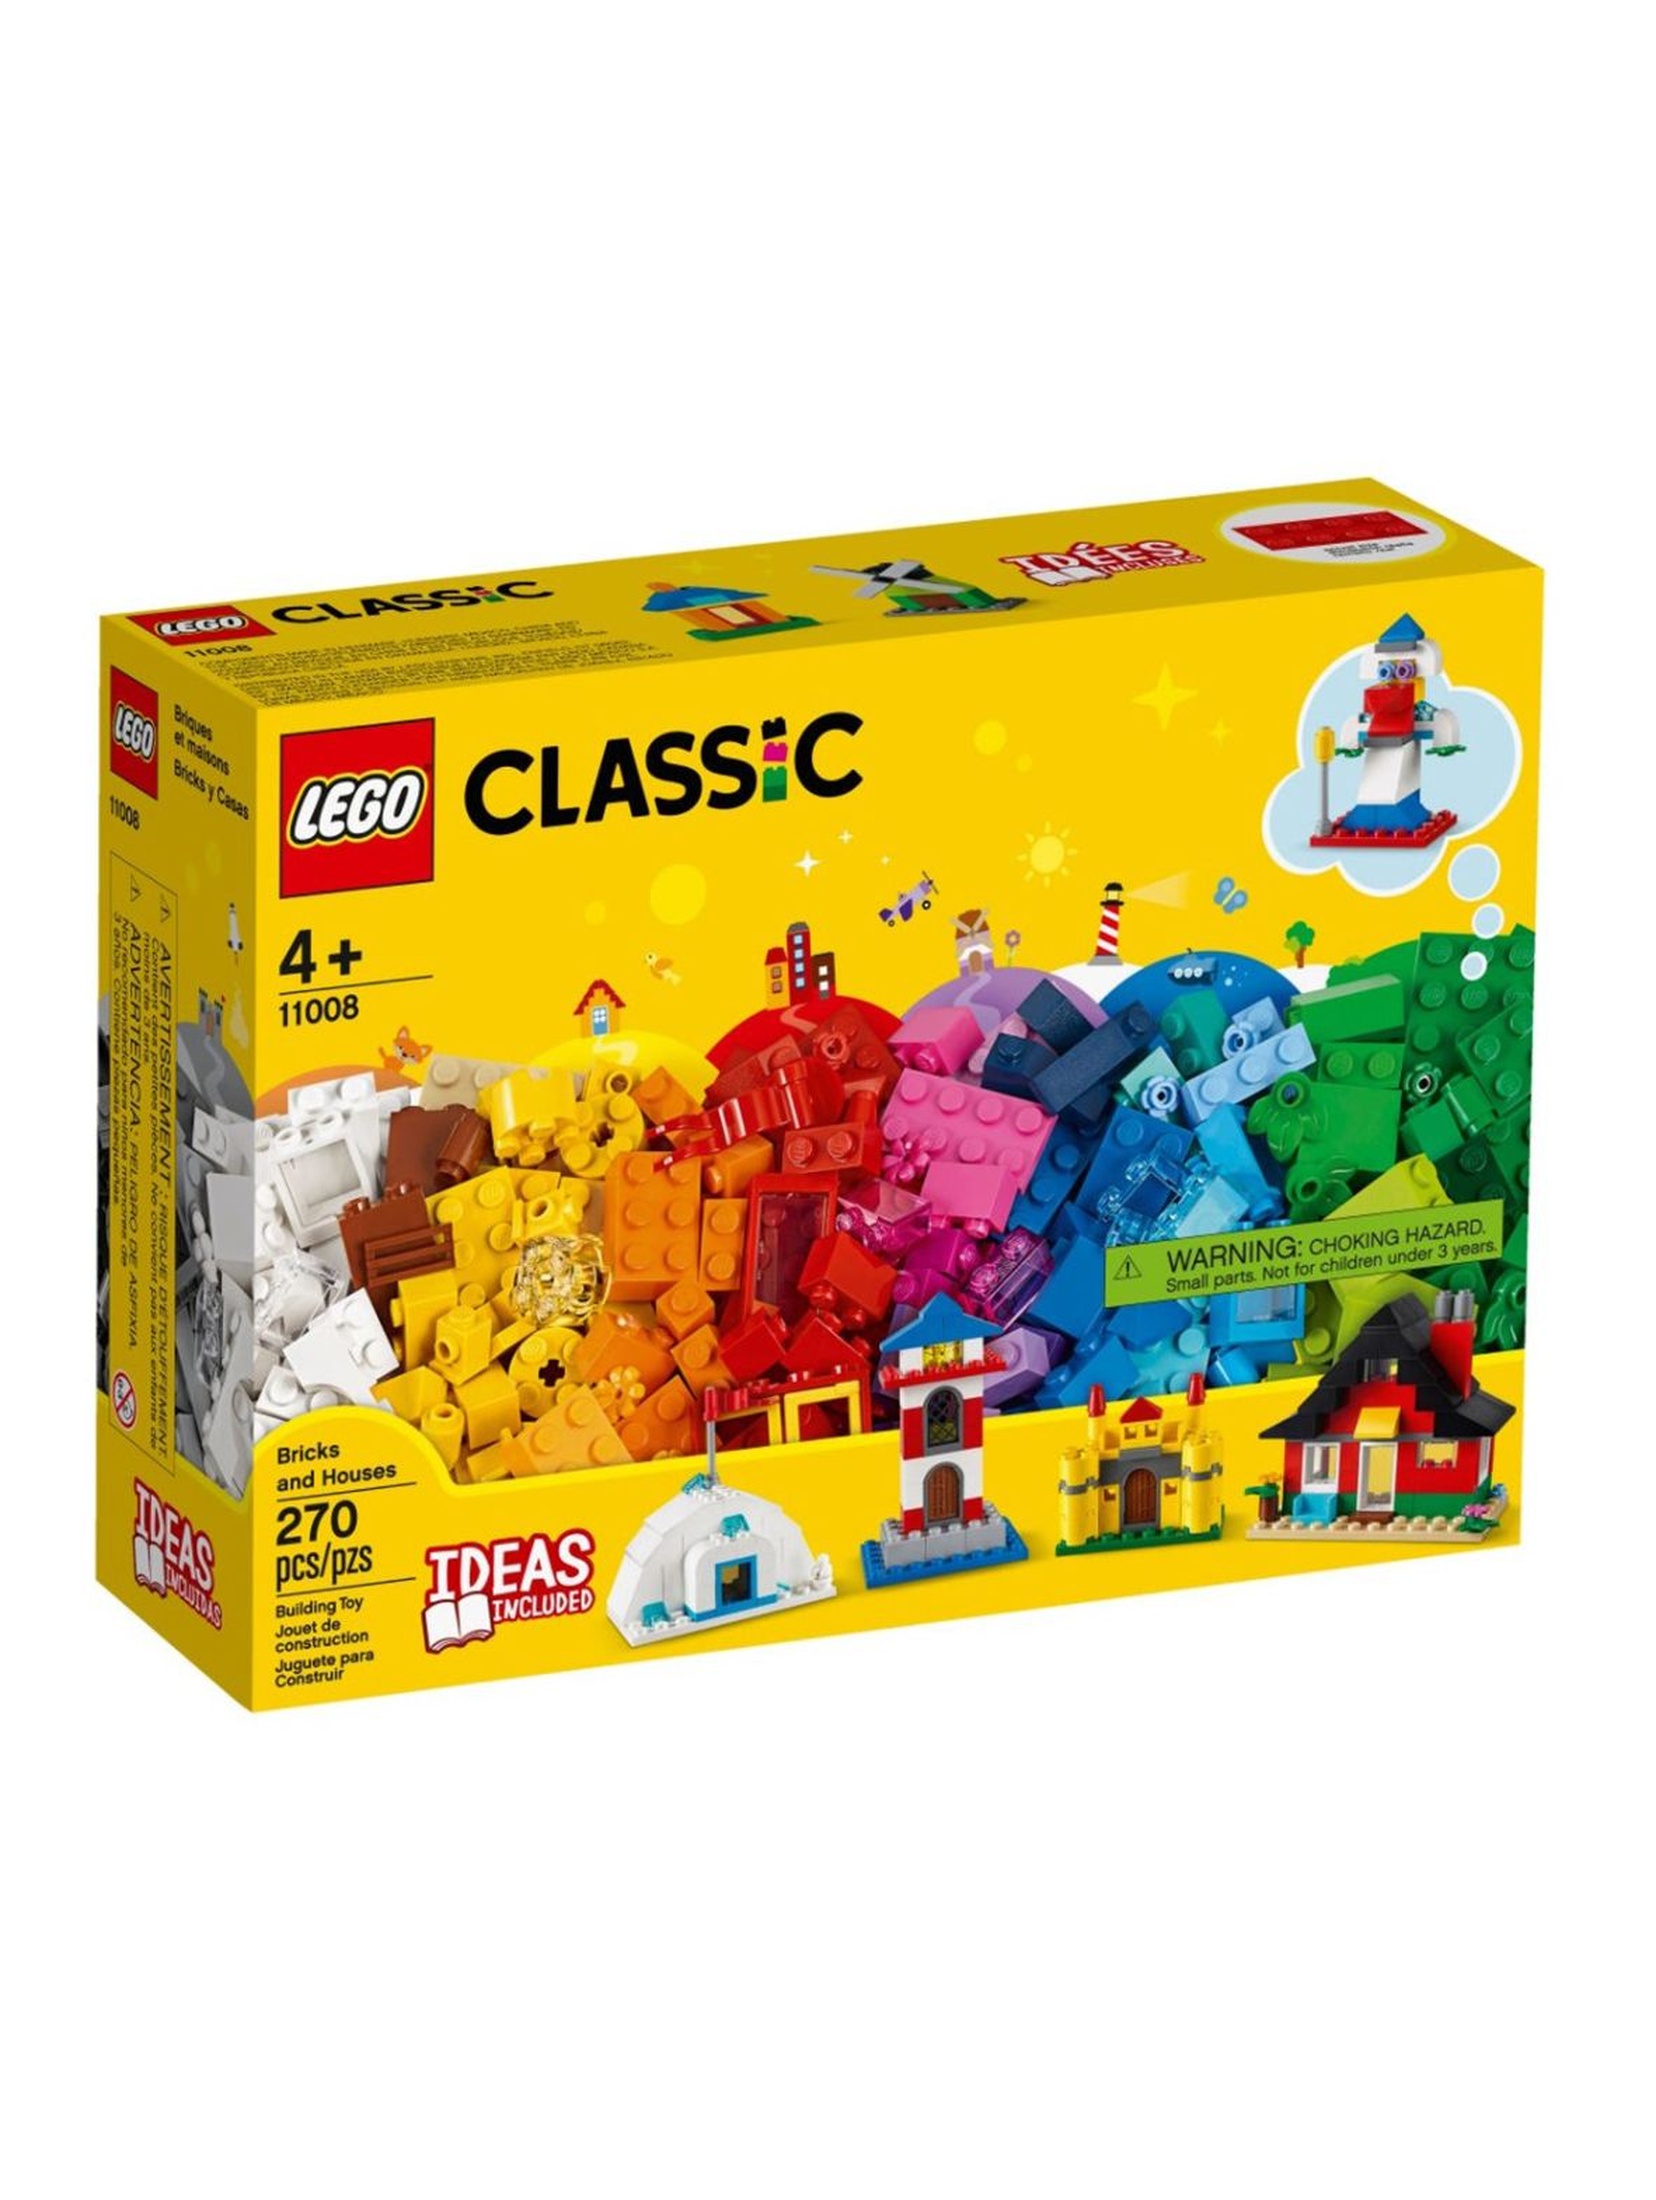 Lego Classic 11008 - Klocki i domki - 270 elementów wiek 4+